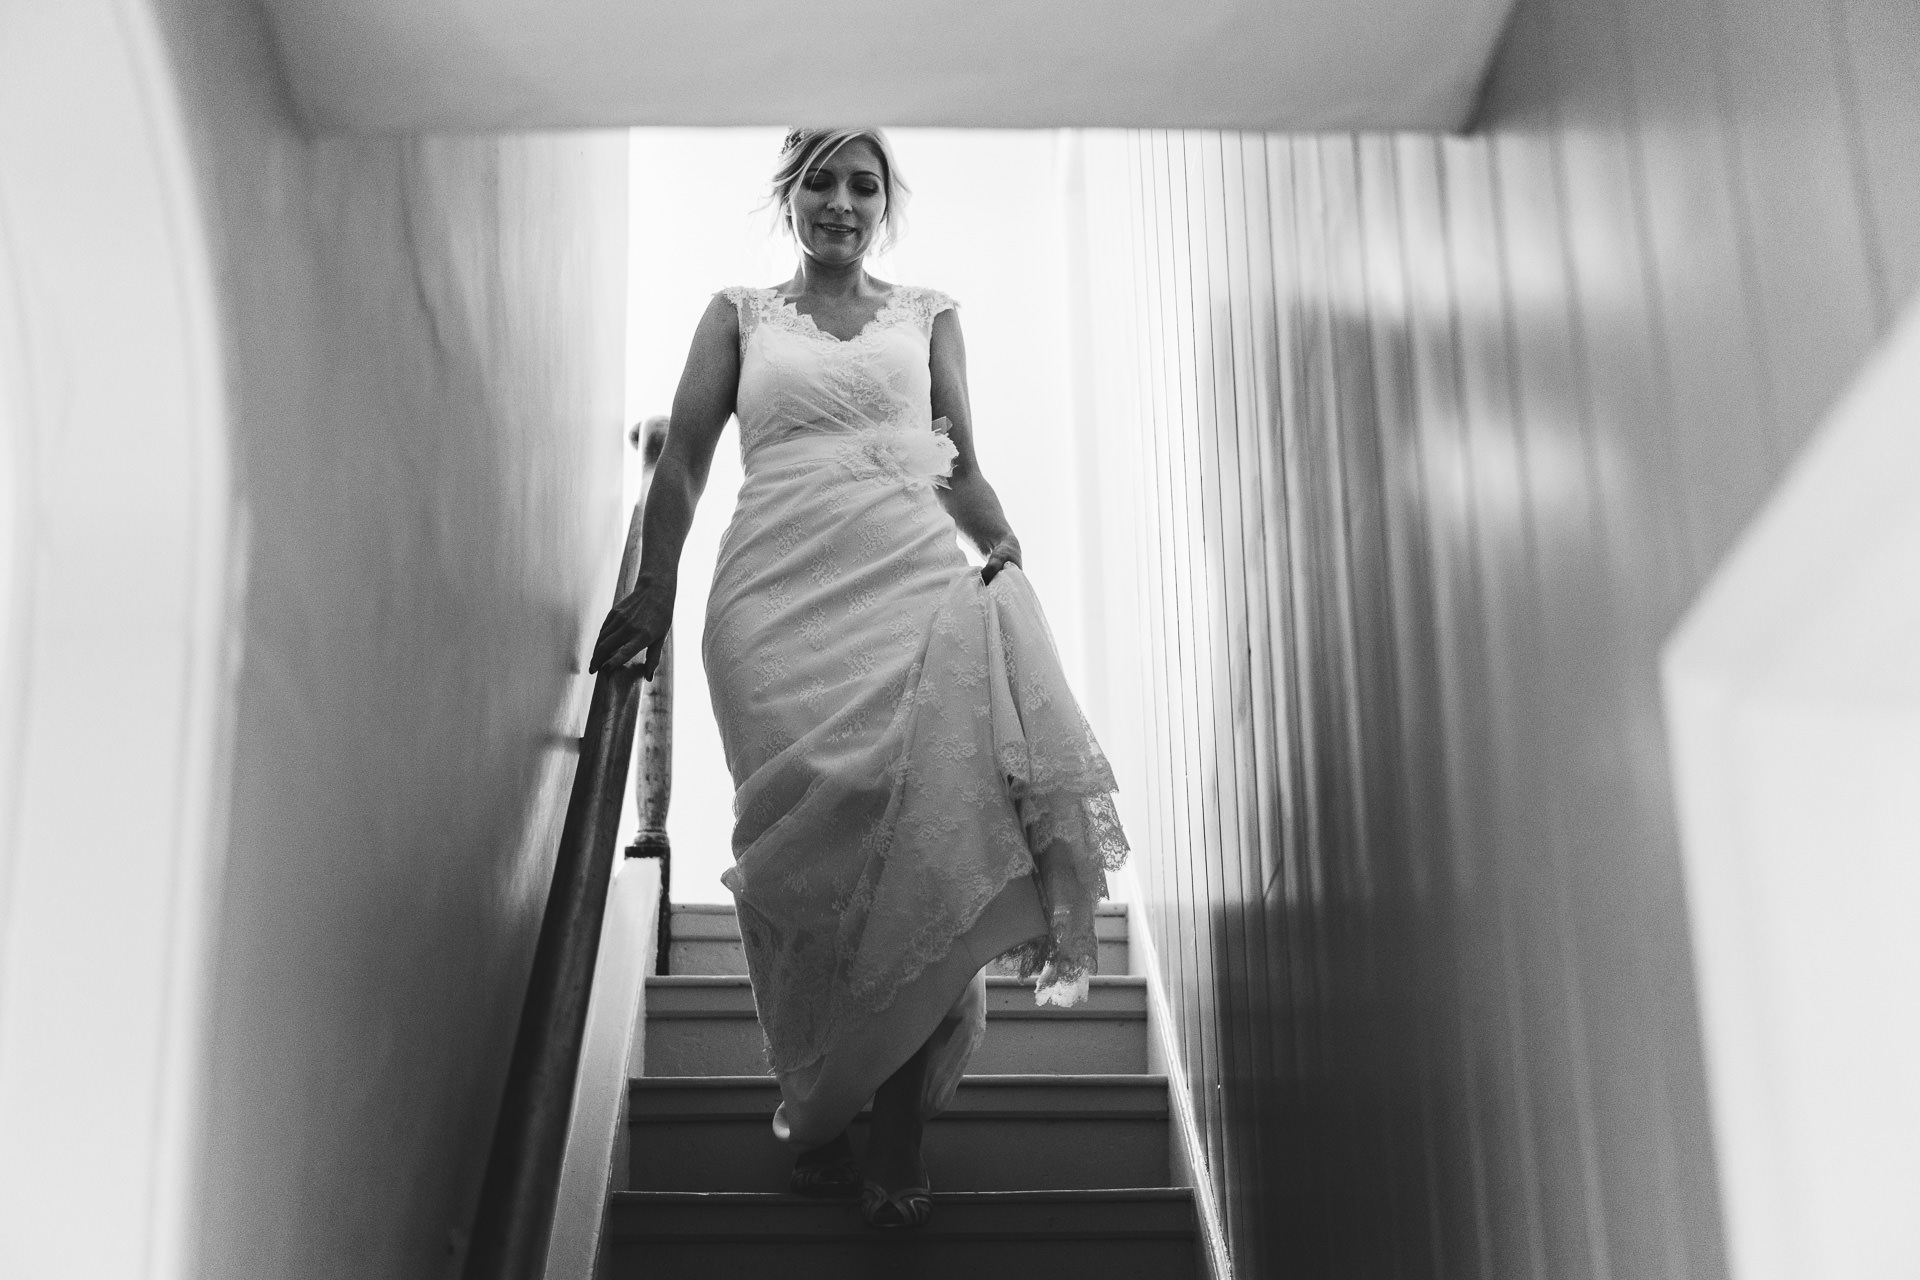 Bride walking down stairs in wedding dress